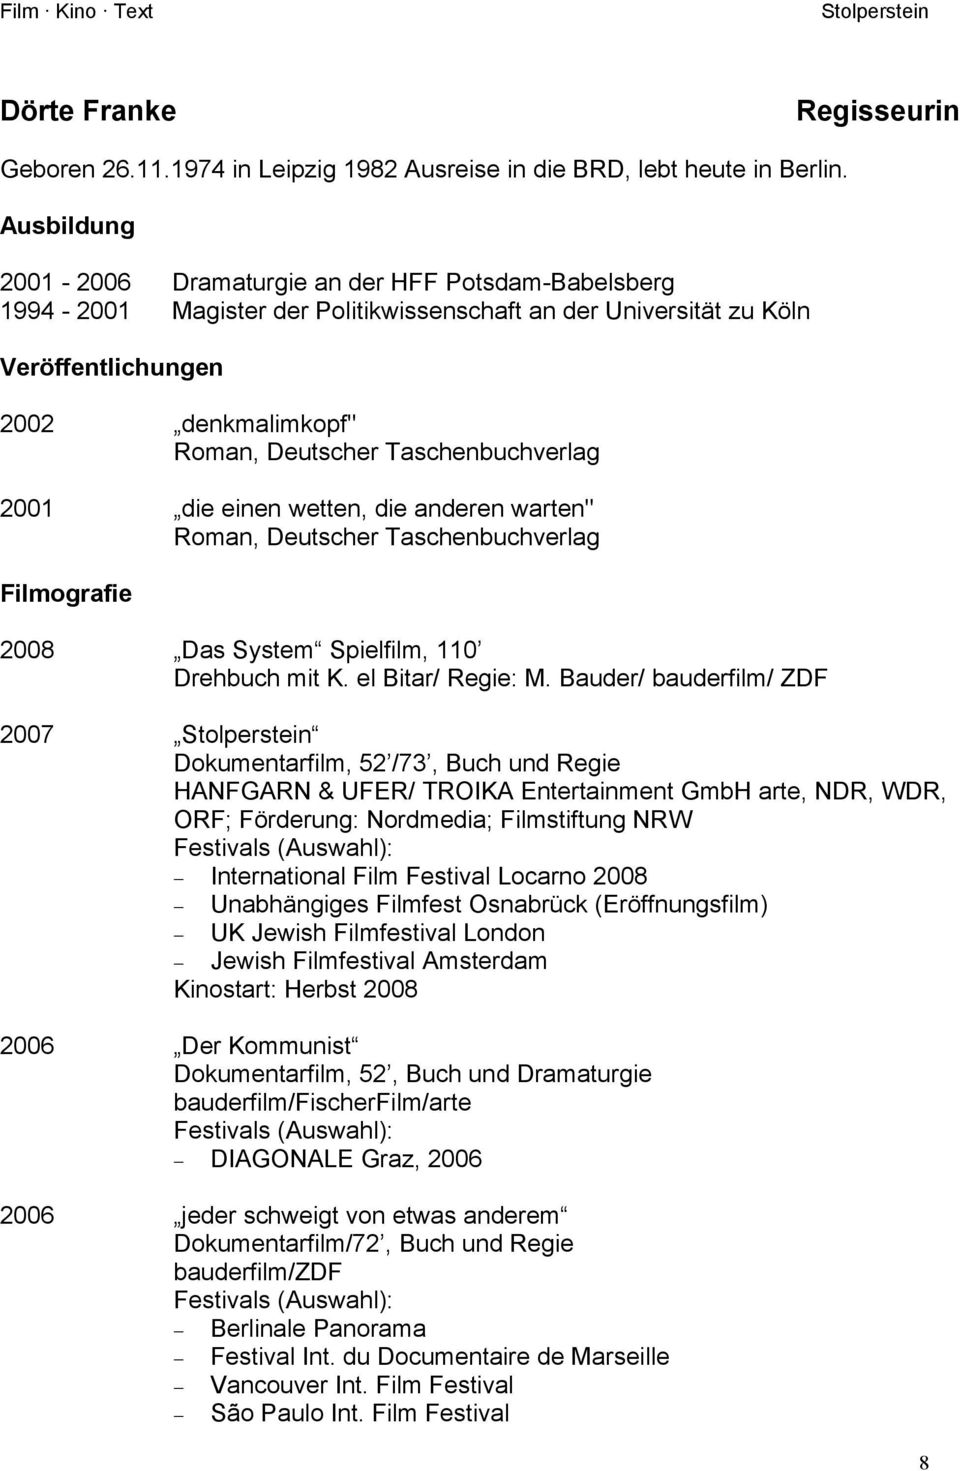 Taschenbuchverlag 2001 die einen wetten, die anderen warten" Roman, Deutscher Taschenbuchverlag Filmografie 2008 Das System Spielfilm, 110 Drehbuch mit K. el Bitar/ Regie: M.